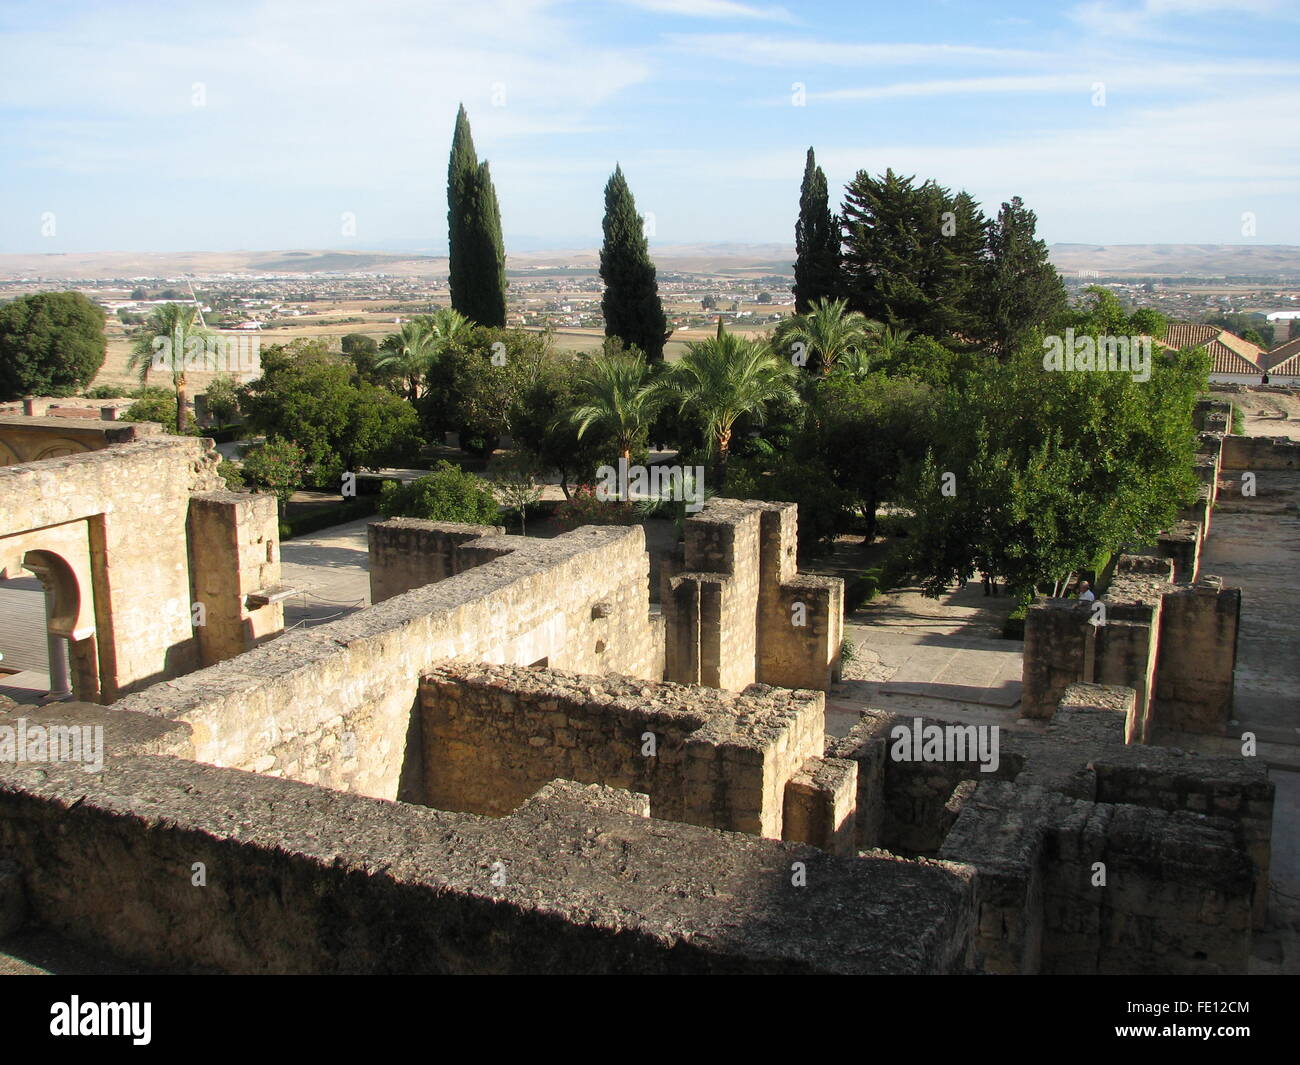 Ruderi di Moresco/musulmani califfato islamico città Medina Azahara, Califfato di Cordoba, sito Patrimonio Mondiale dell'UNESCO 2018, Spagna Foto Stock